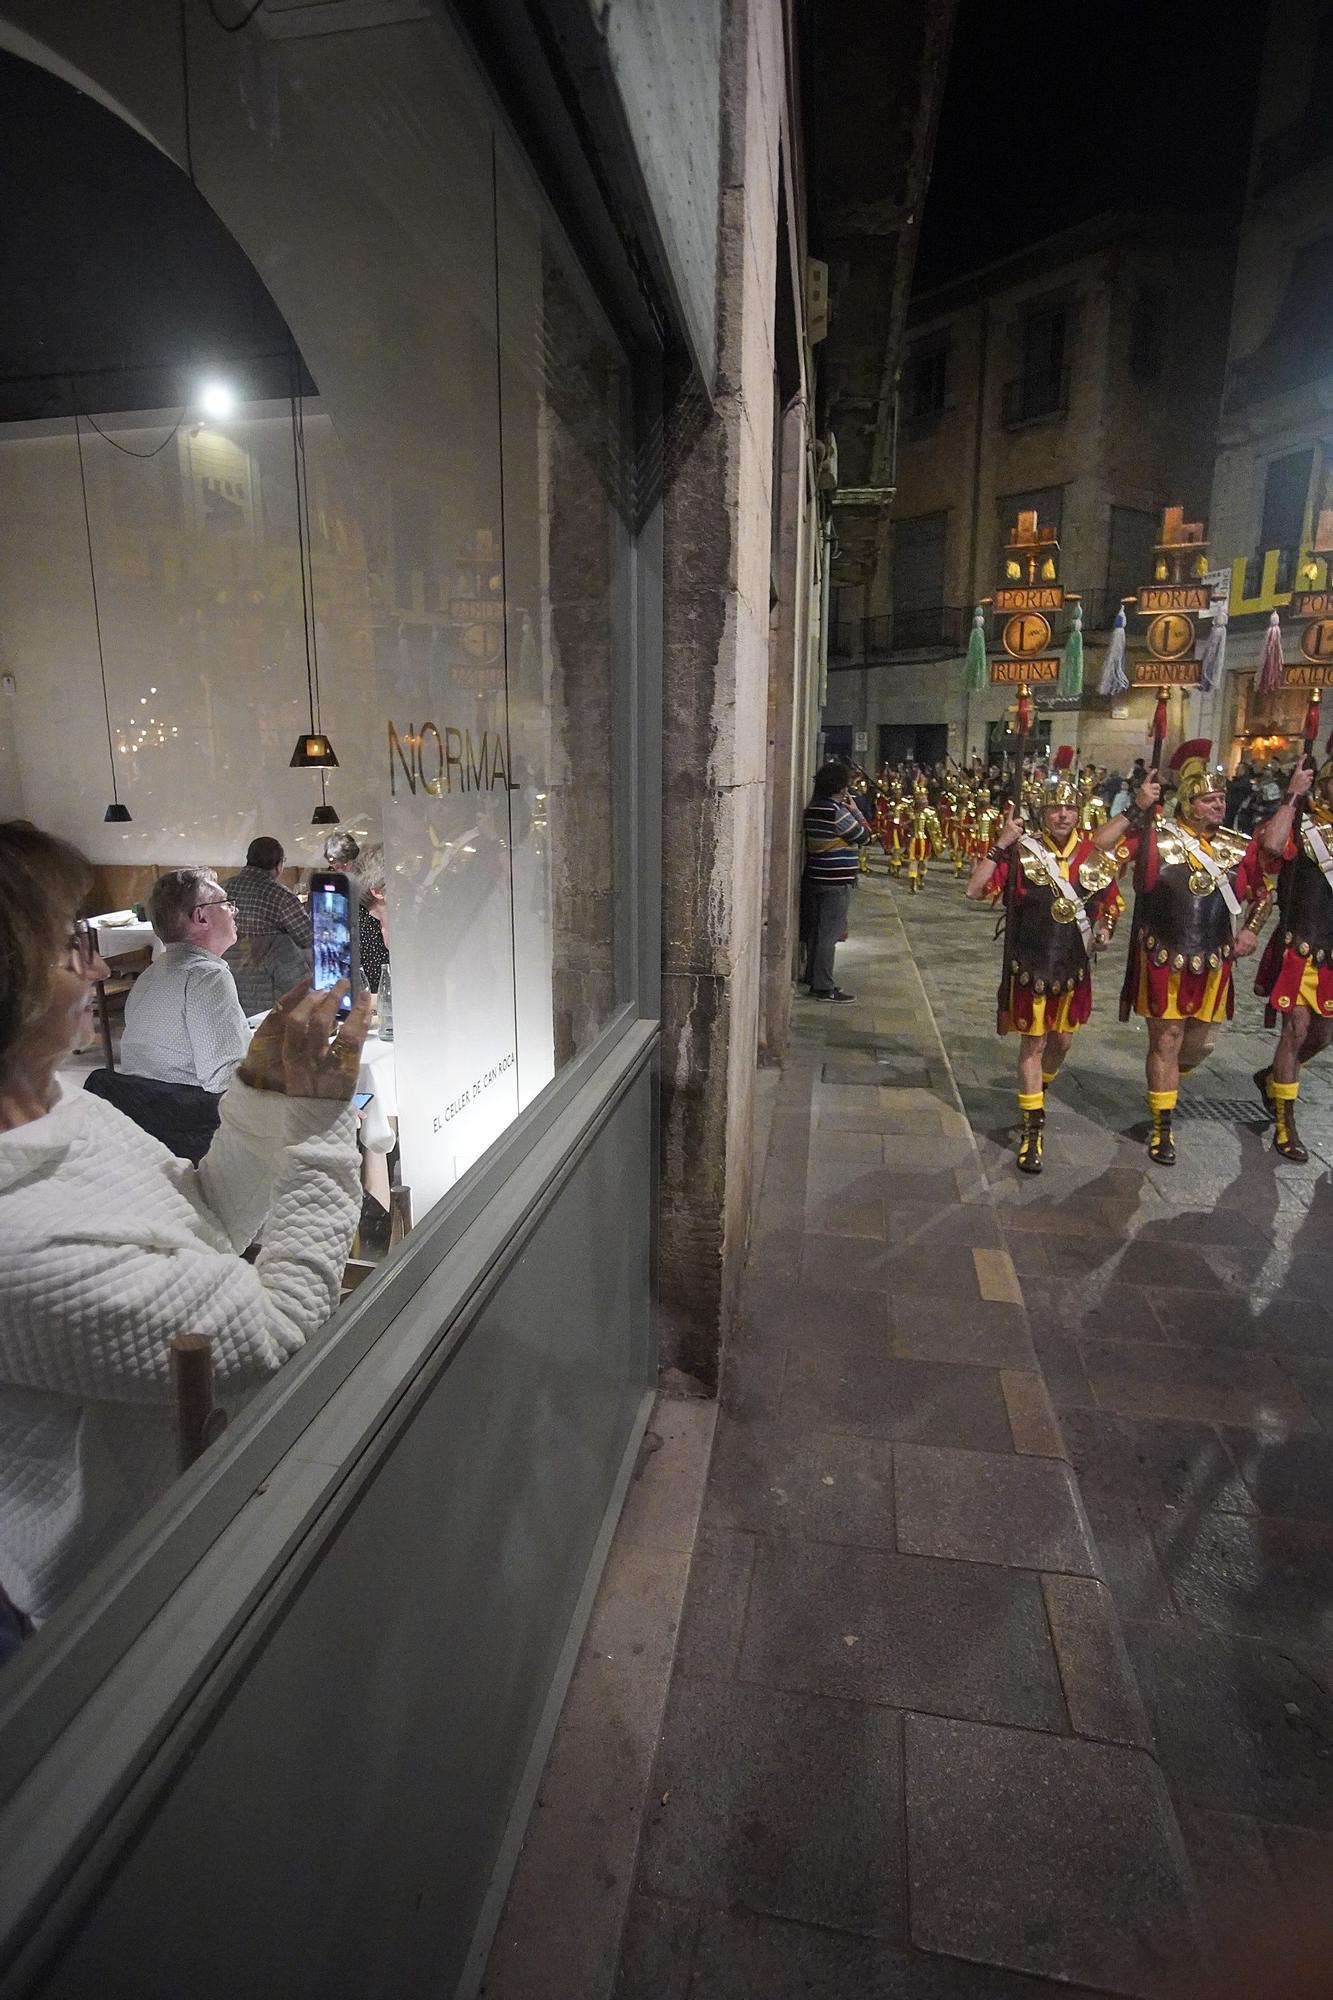 Els Manaies de Girona entreguen el Penó a Joan Alenyà